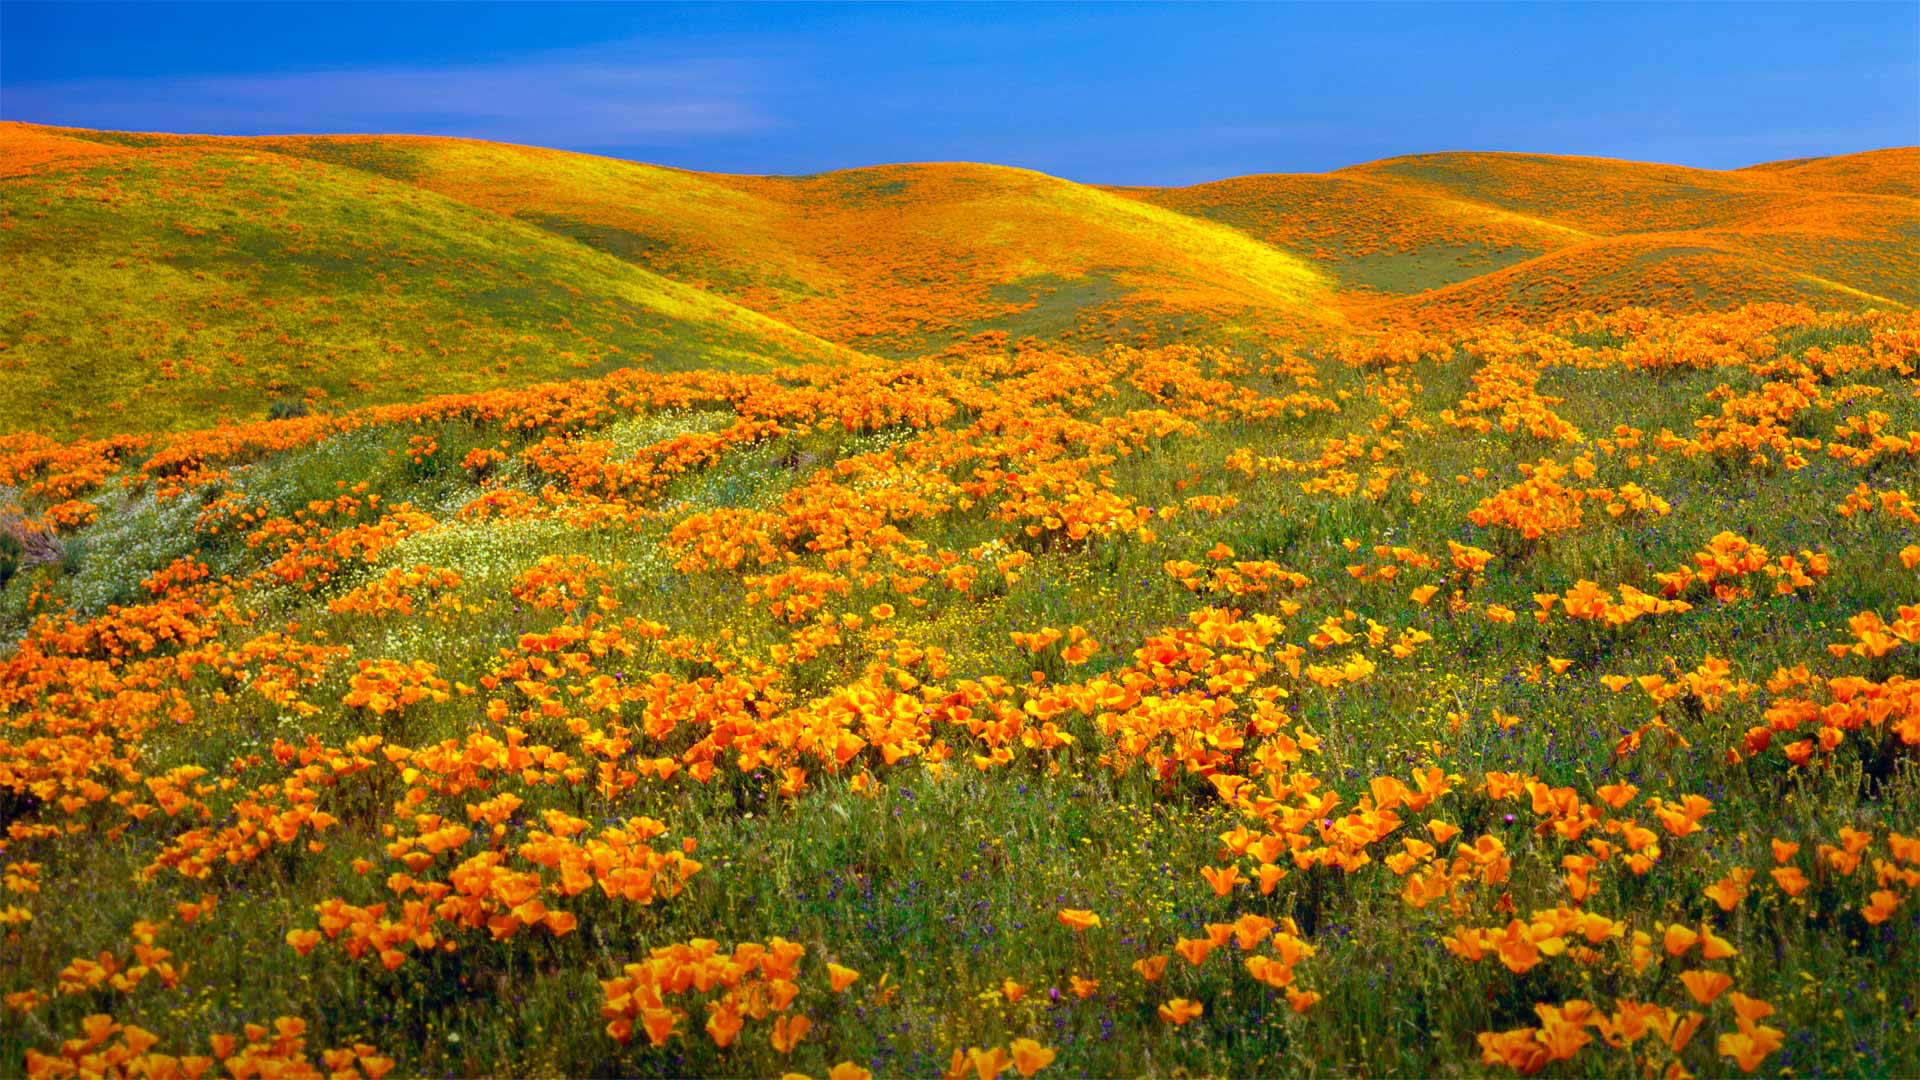 Antelope Valley California Poppy Reserve near Lancaster, California